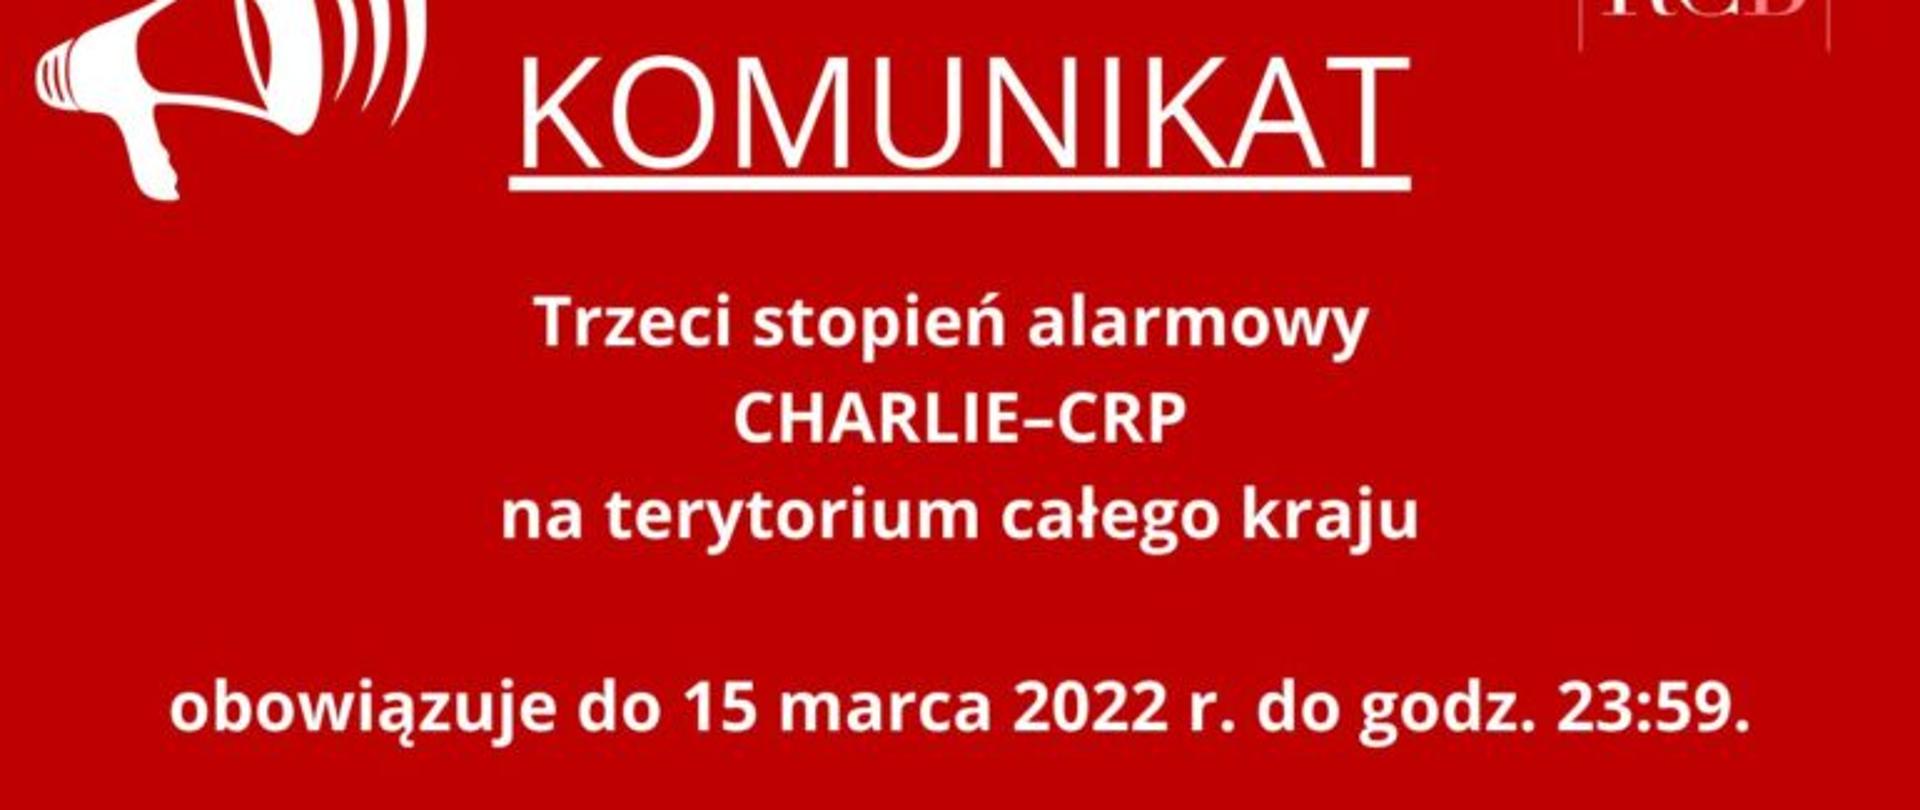 Na czerwonym tle napis: Komunikat; Trzeci stopień alarmowy CHARLIE-CRP na terytorium całego kraju obowiązuje do 15 marca 2022 do godz. 23.59